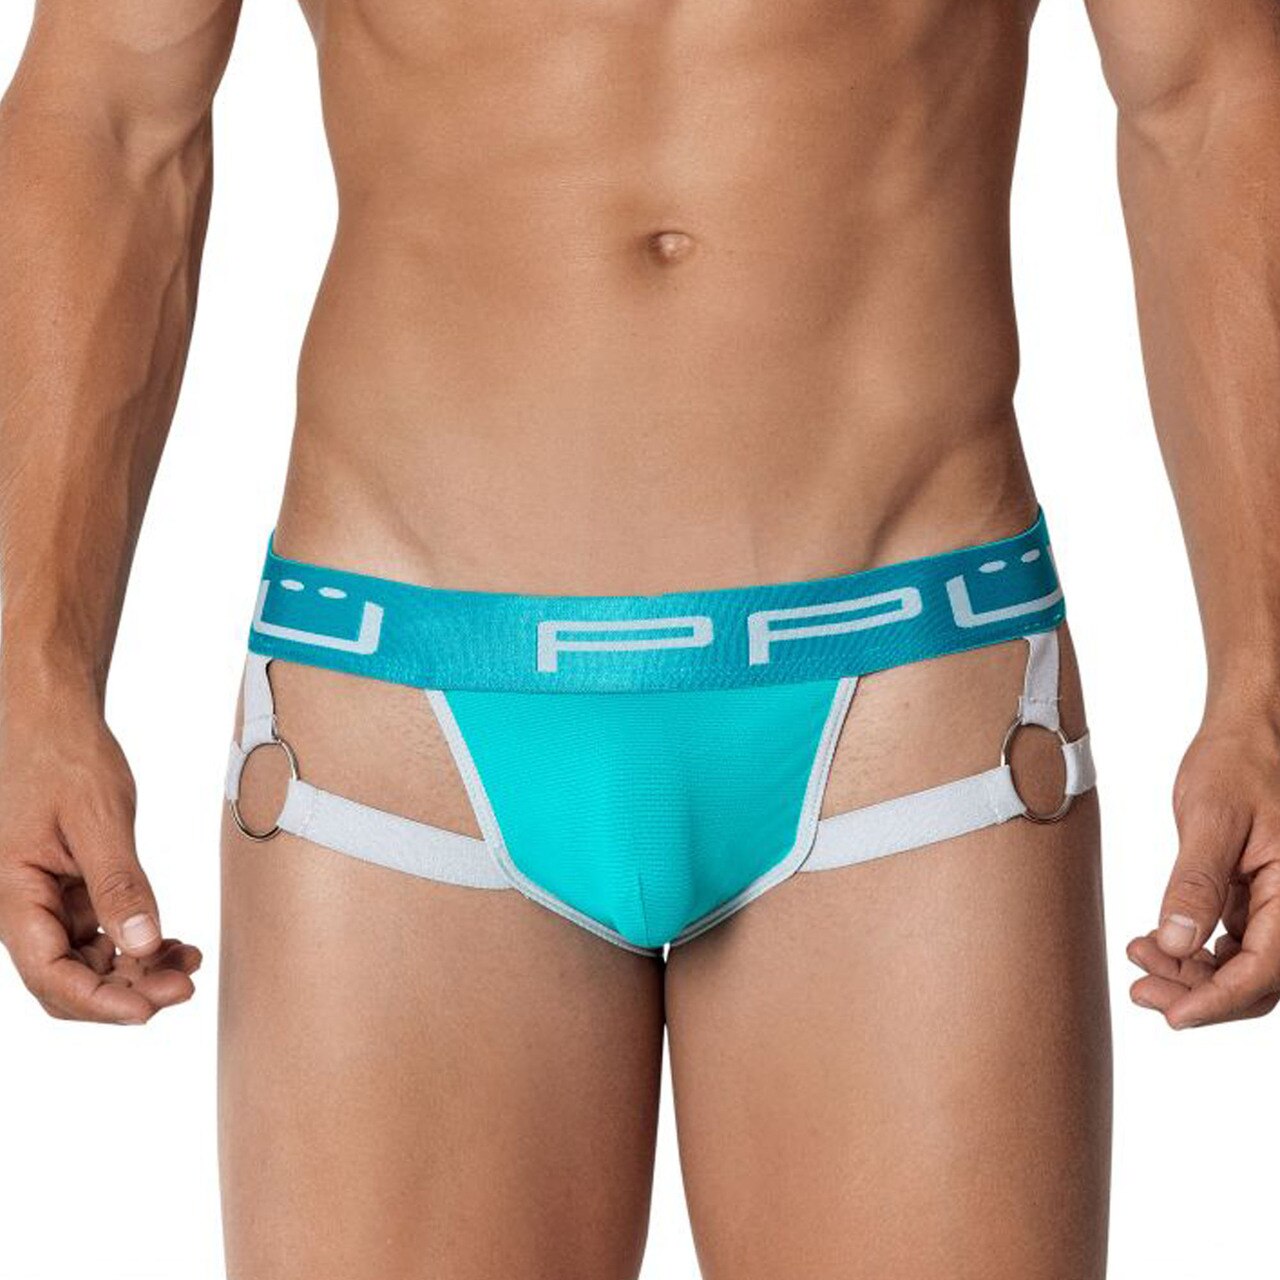 SALE - Mens PPU Underwear Strap Jock Strap with Metal Rings Jade